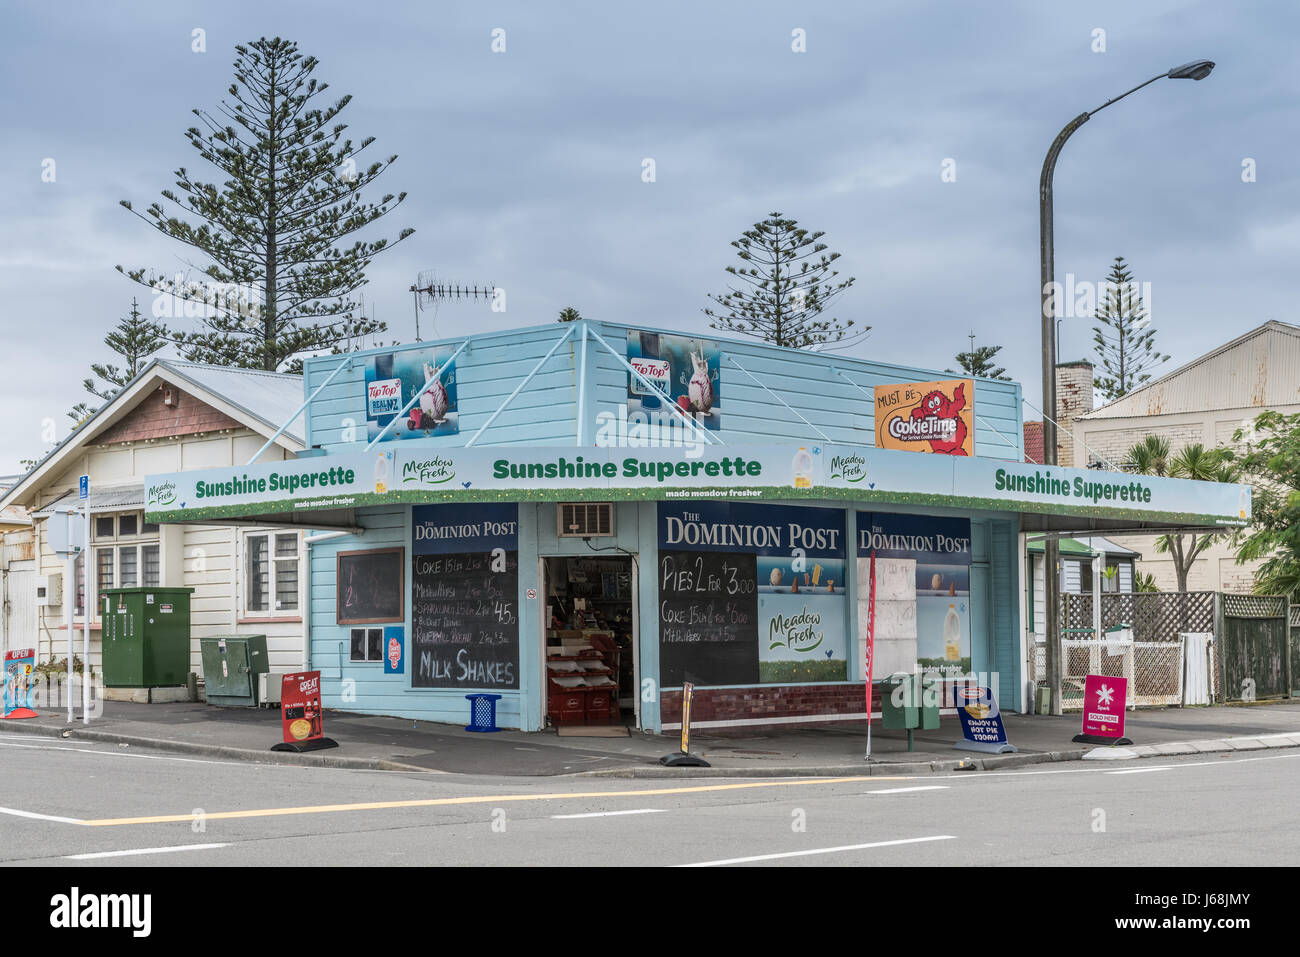 Napier, Nouvelle-Zélande - mars 9, 2017 : Sunshine Superette est un magasin du coin vente de produits d'épicerie, des journaux et des produits de base de ménage. Peinture bleu clair Banque D'Images